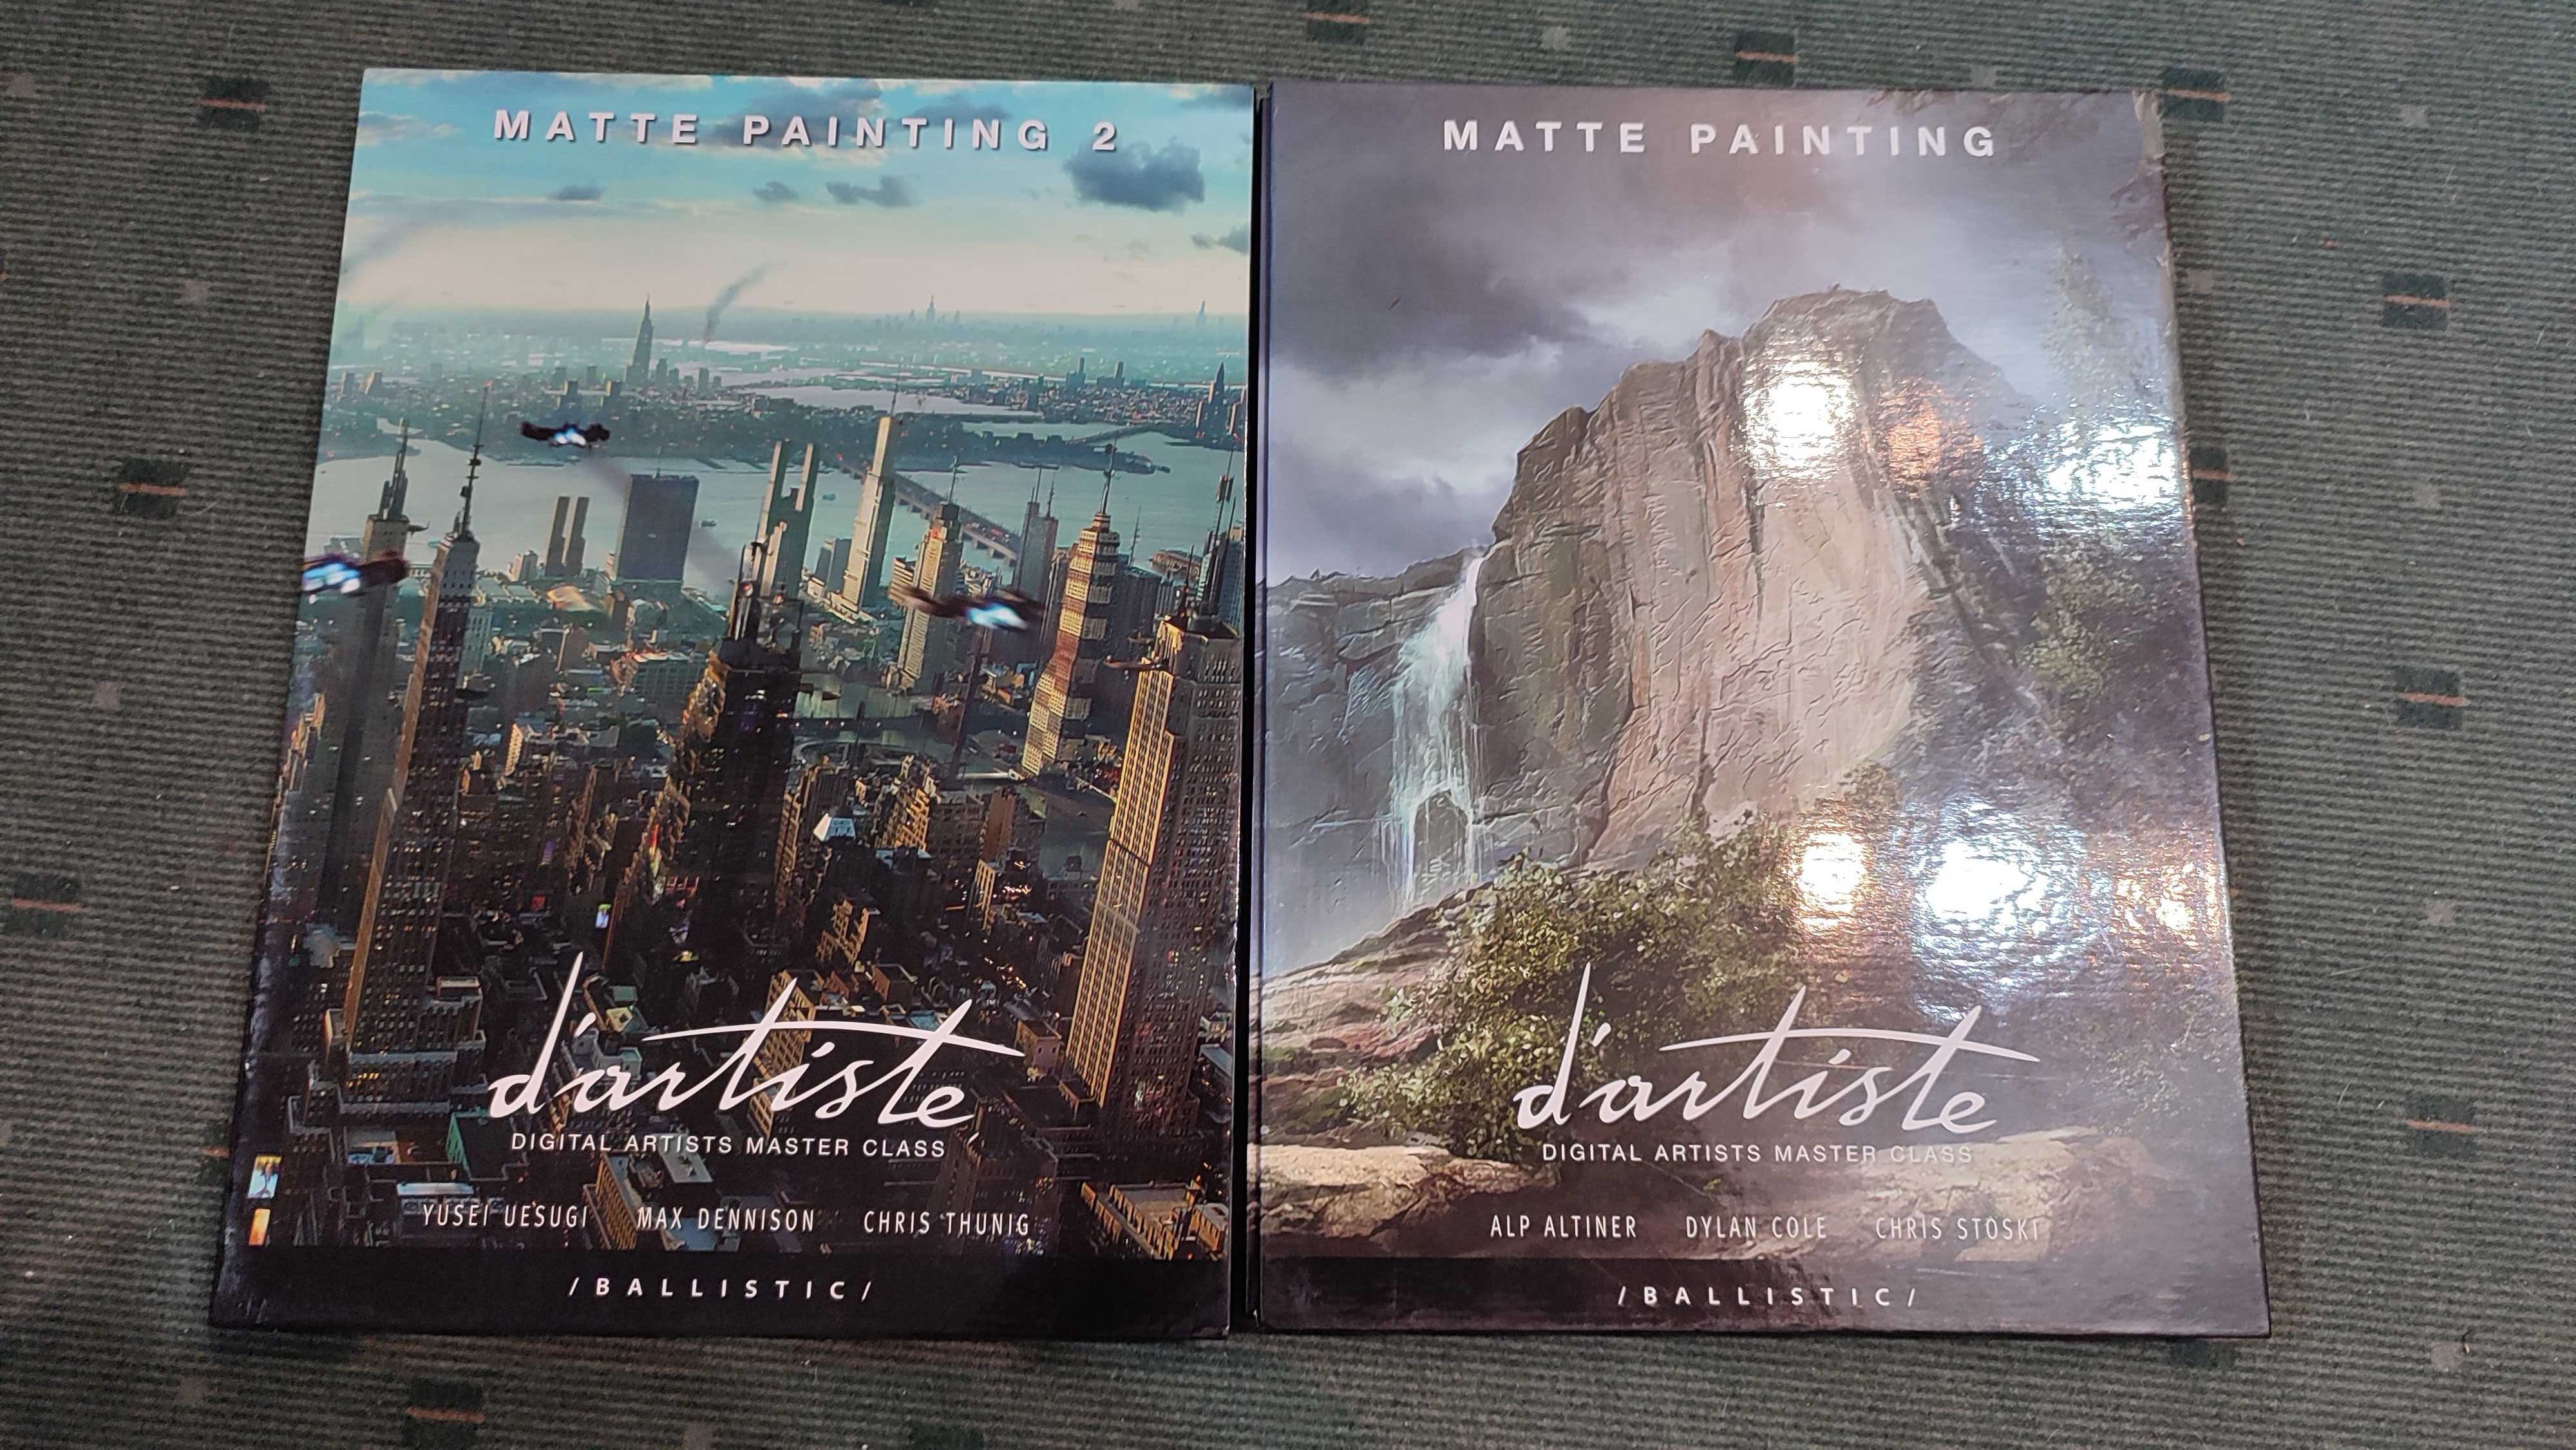 D'artiste Matte Painting: Digital Artists Master Class - 2 volumes